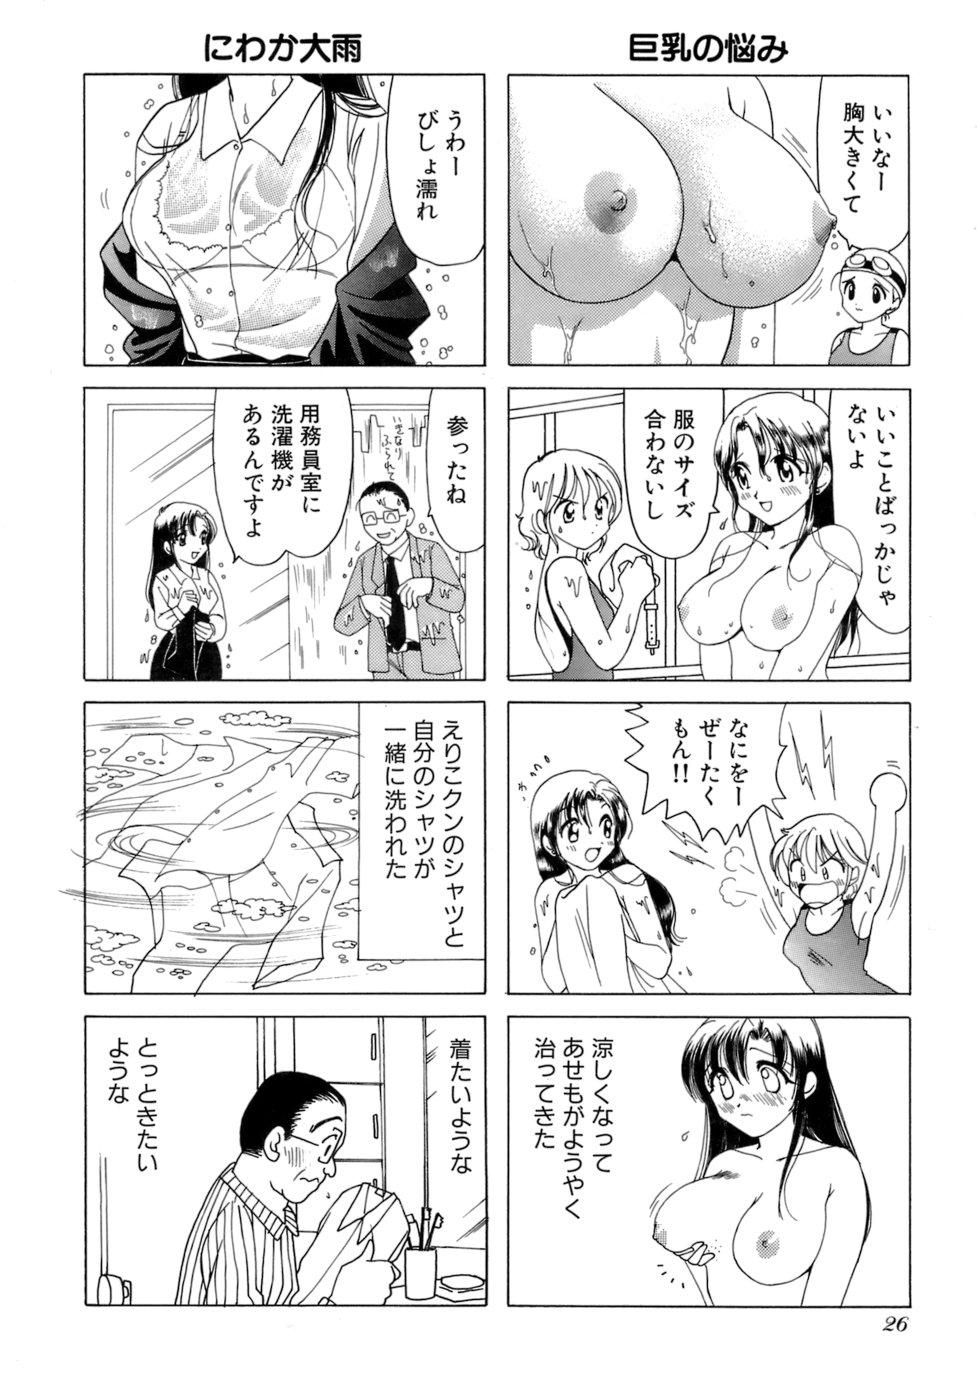 Eriko-kun, Ocha!! Vol.02 28